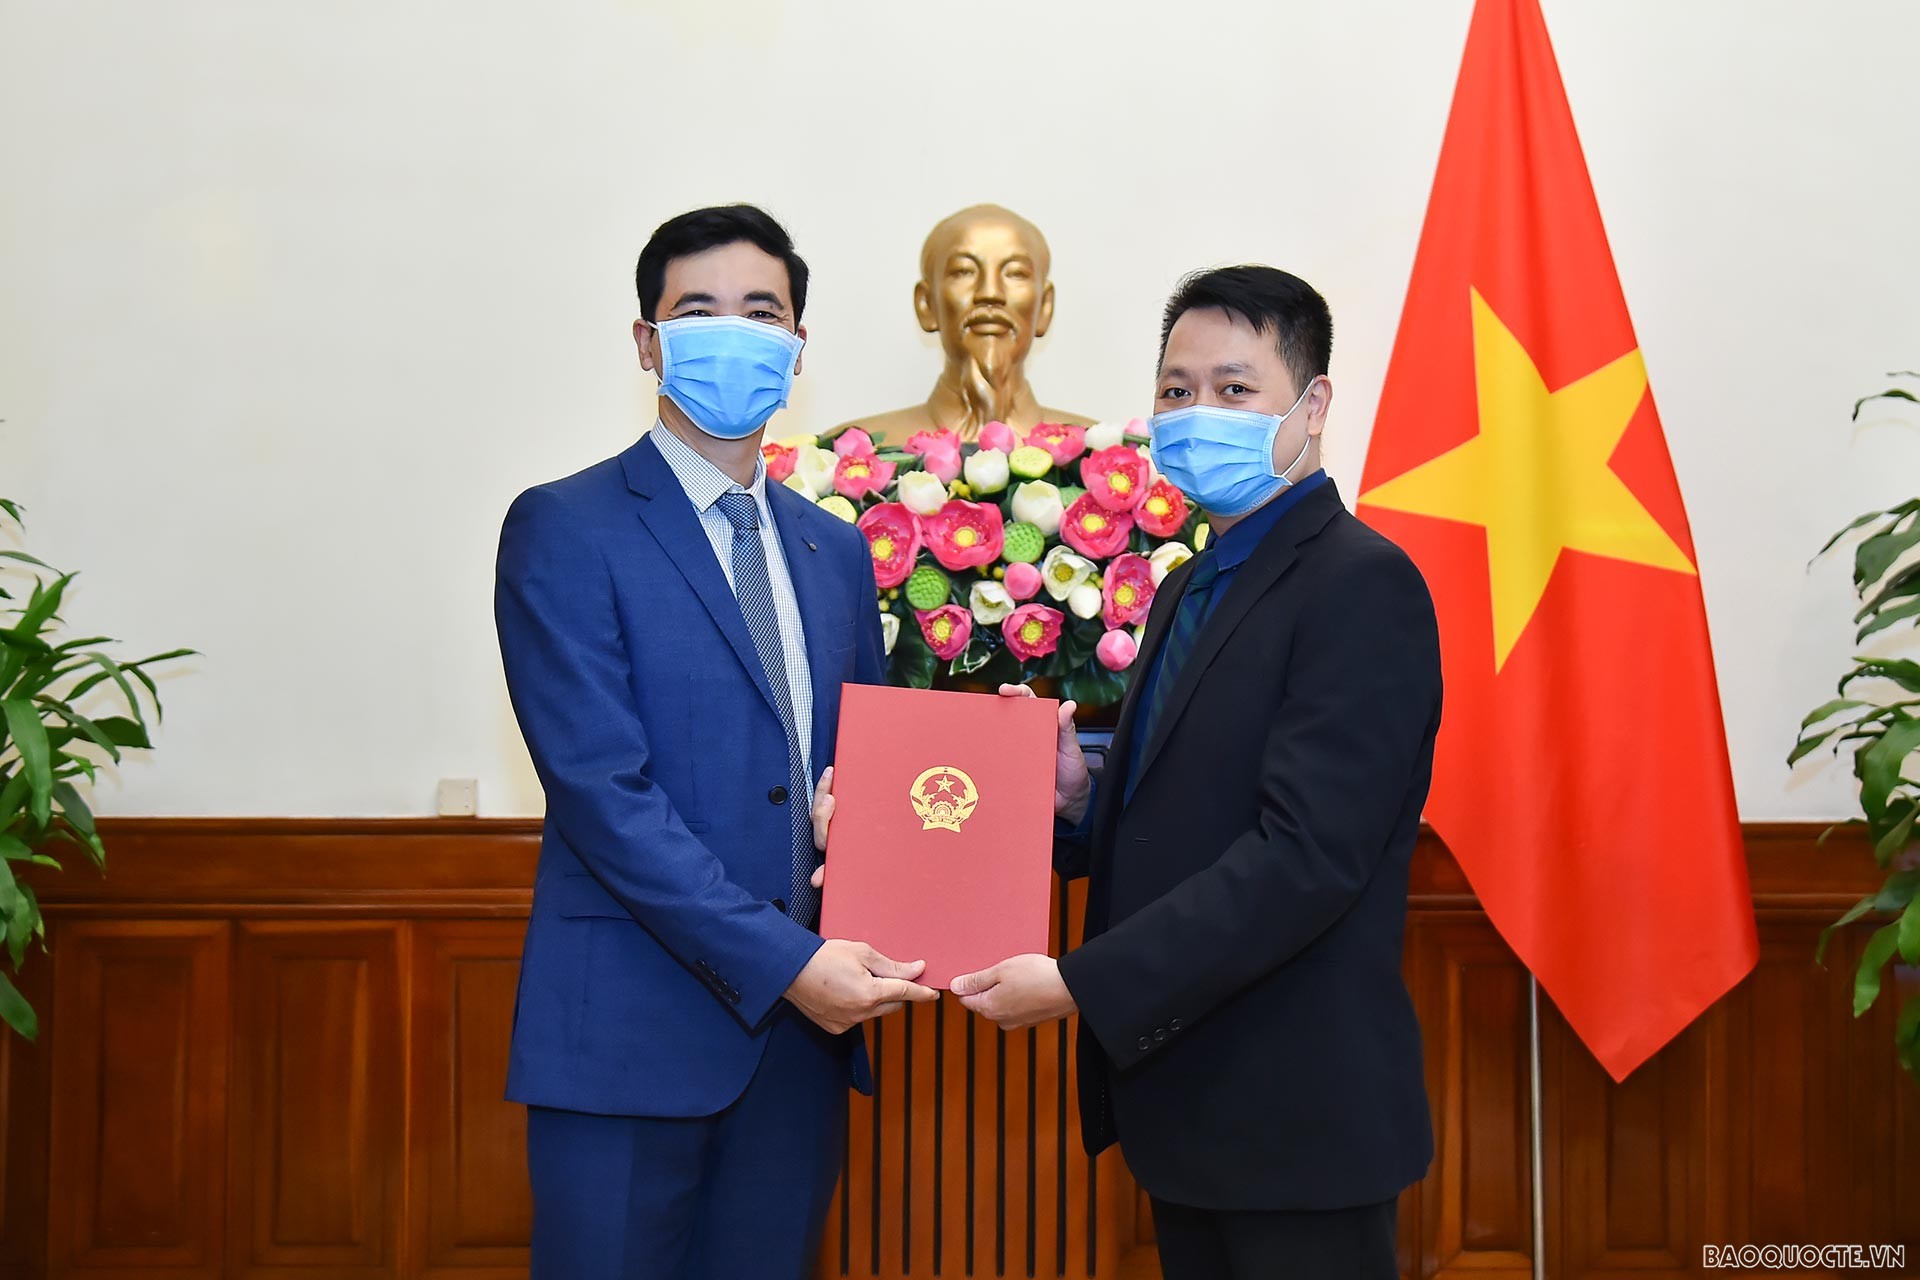 Phó Vụ trưởng phụ trách Vụ Tổ chức Cán bộ Nguyễn Việt Anh đã trao quyết định công nhận ông Nguyễn Ngọc Vinh là Tập sự Phó Vụ trưởng Vụ Đông Nam Á - Nam Á - Nam Thái Bình Dương.